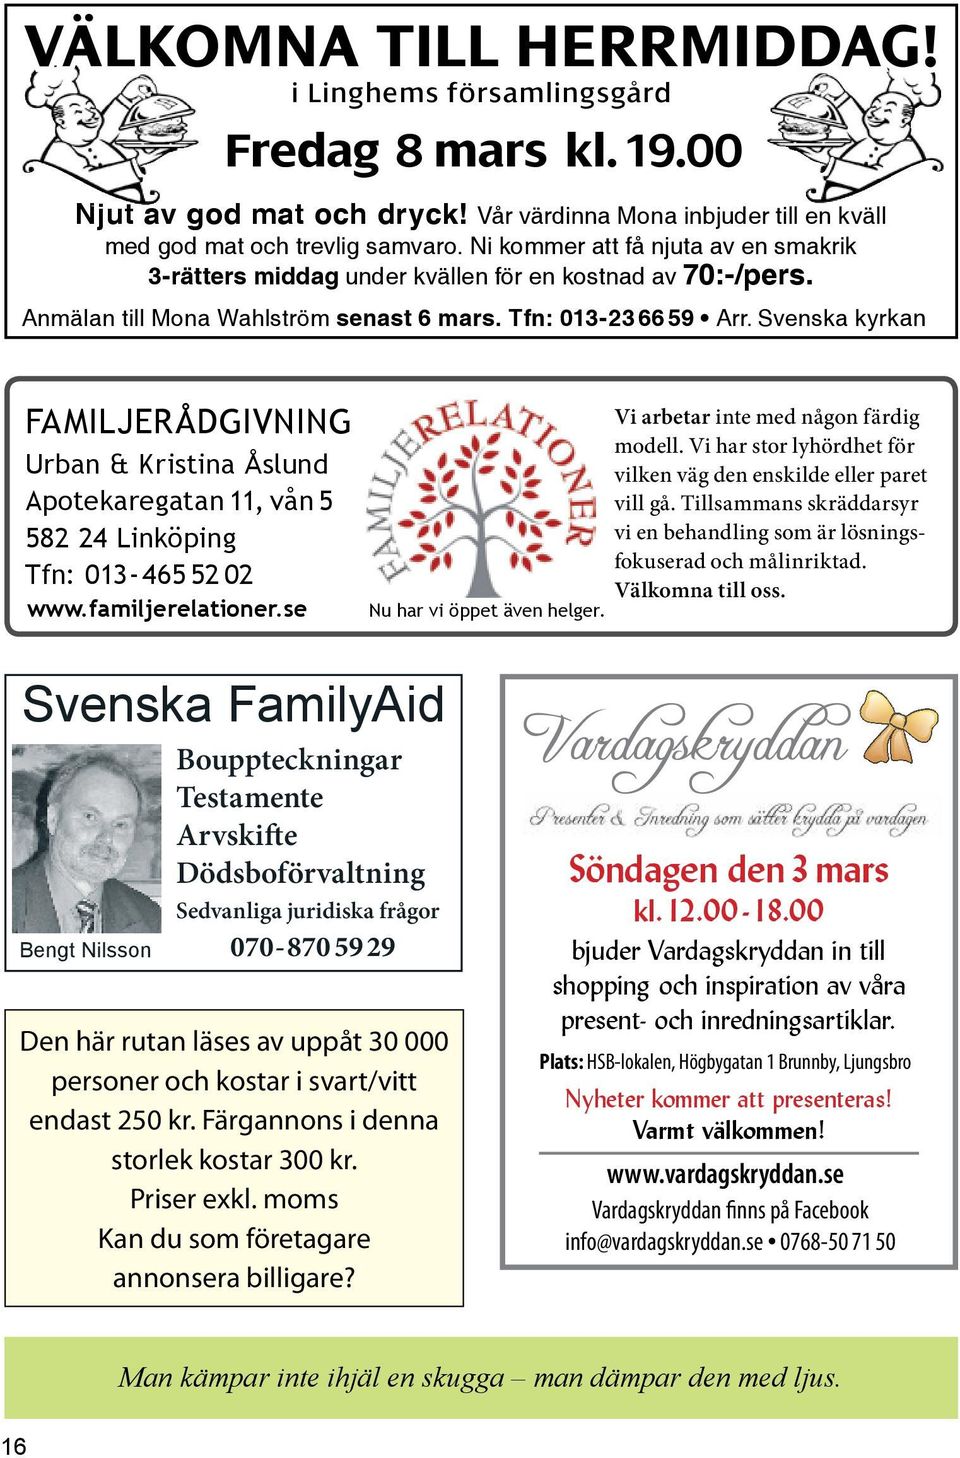 Svenska kyrkan FAMILJERÅDGIVNING Urban & Kristina Åslund Apotekaregatan 11, vån 5 582 24 Linköping Tfn: 013-465 52 02 www.familjerelationer.se Nu har vi öppet även helger.